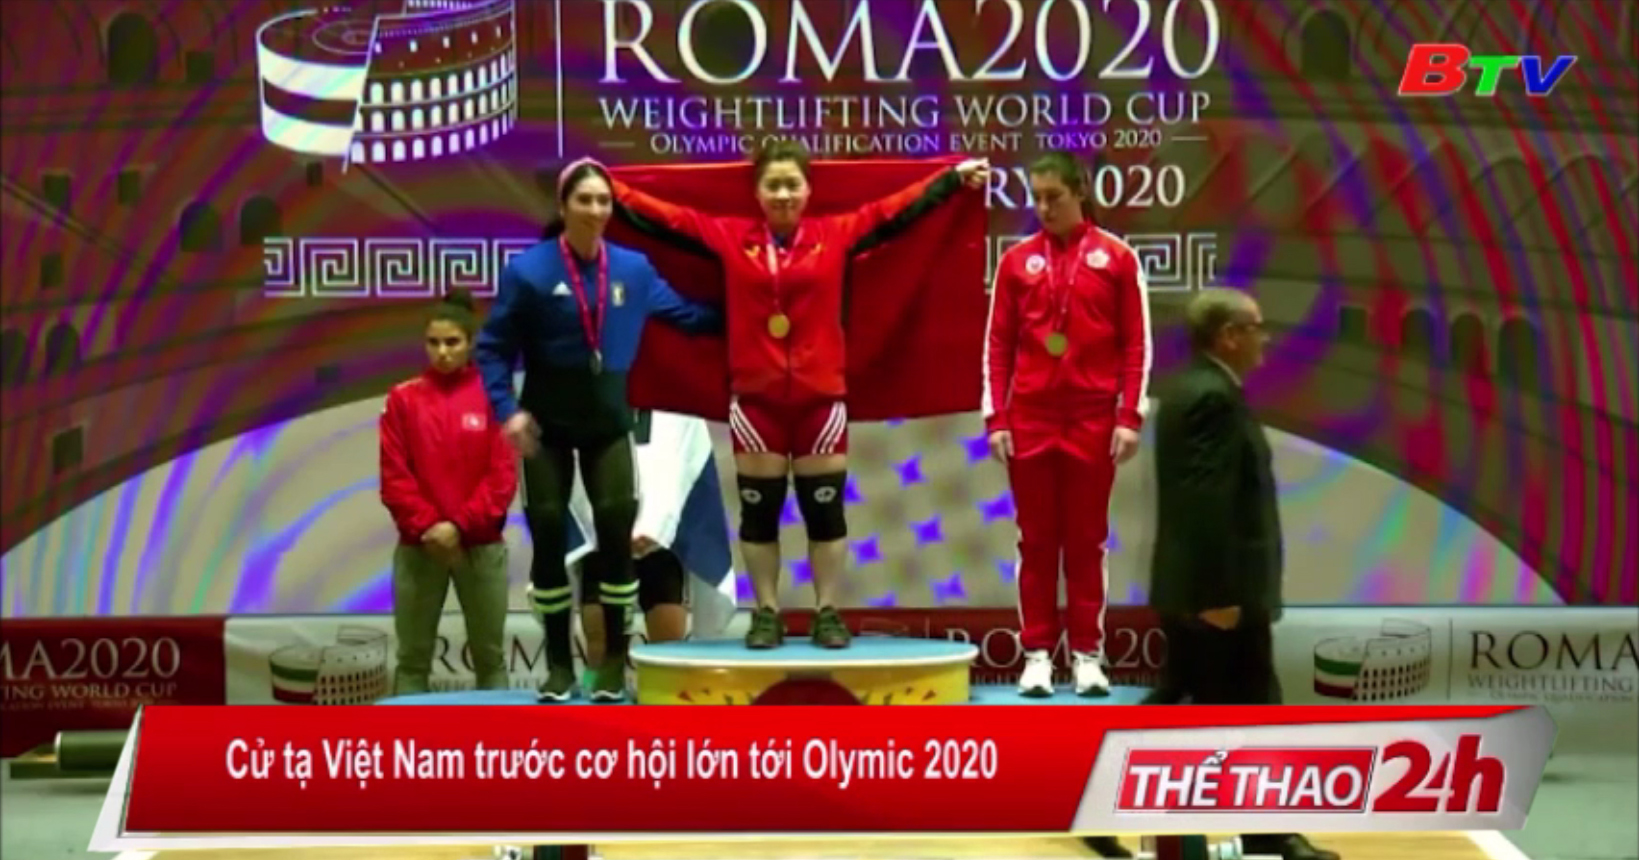 Cử tạ Việt Nam trước cơ hội lớn tới Olympic 2020